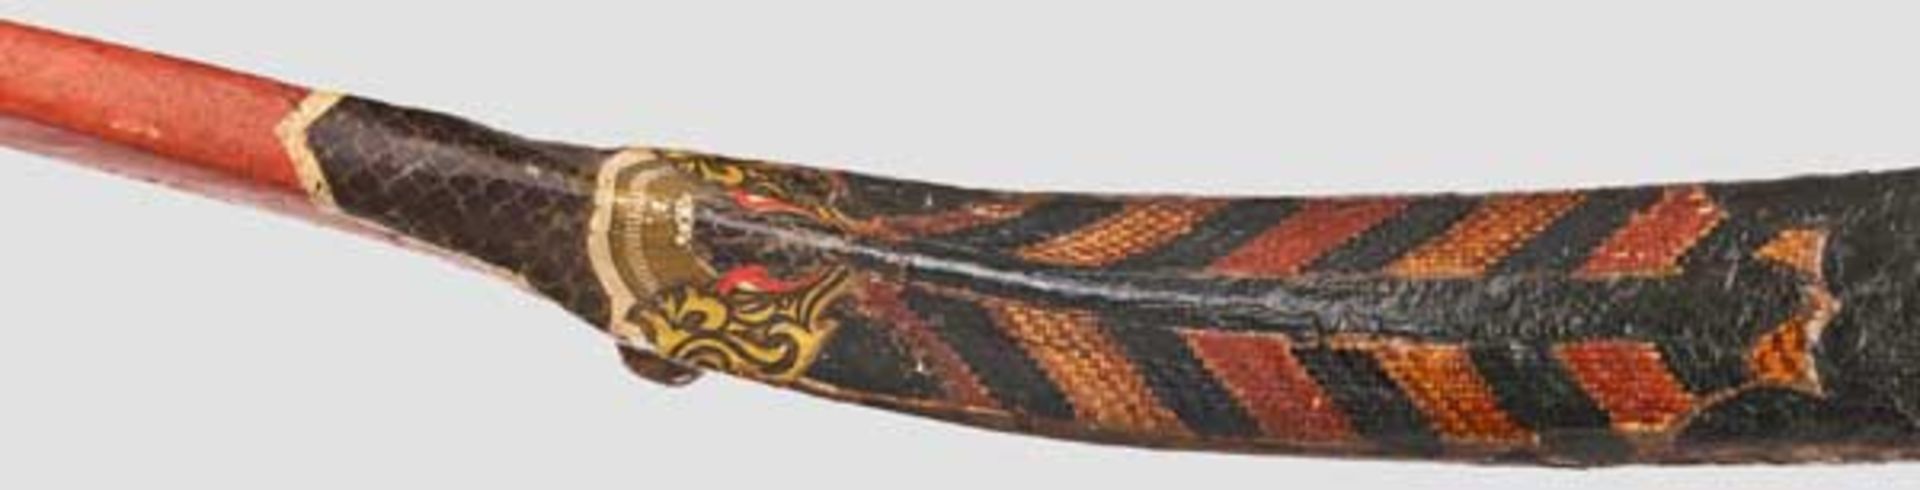 Kompositbogen im Mandschu-Stil China, 19. Jhdt. Reflex gekrümmte Wurfarme aus Horn, Bambus und - Bild 3 aus 3